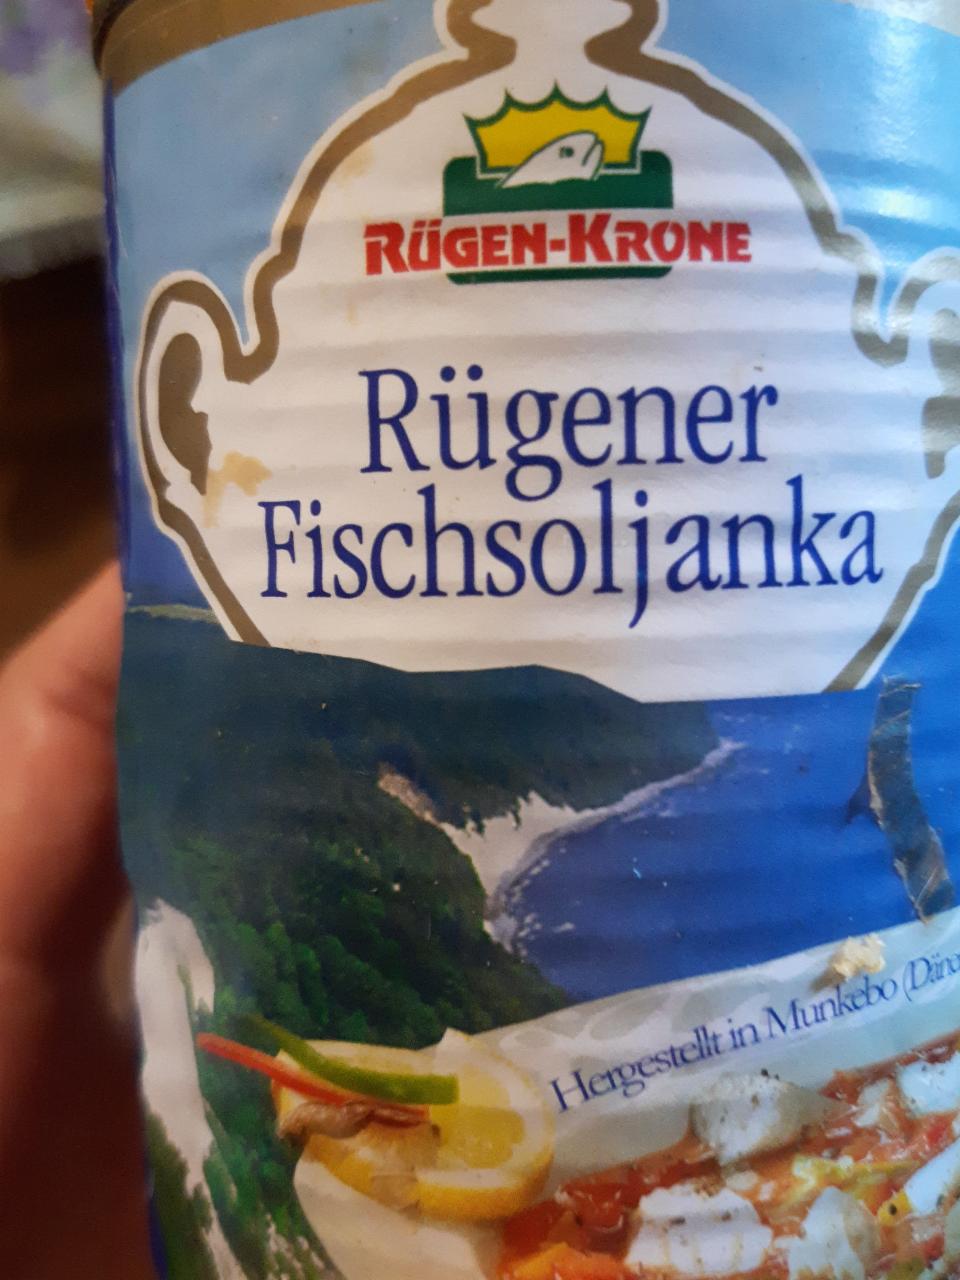 Fotografie - Rügener Fischsoljanka Rügen-Krone